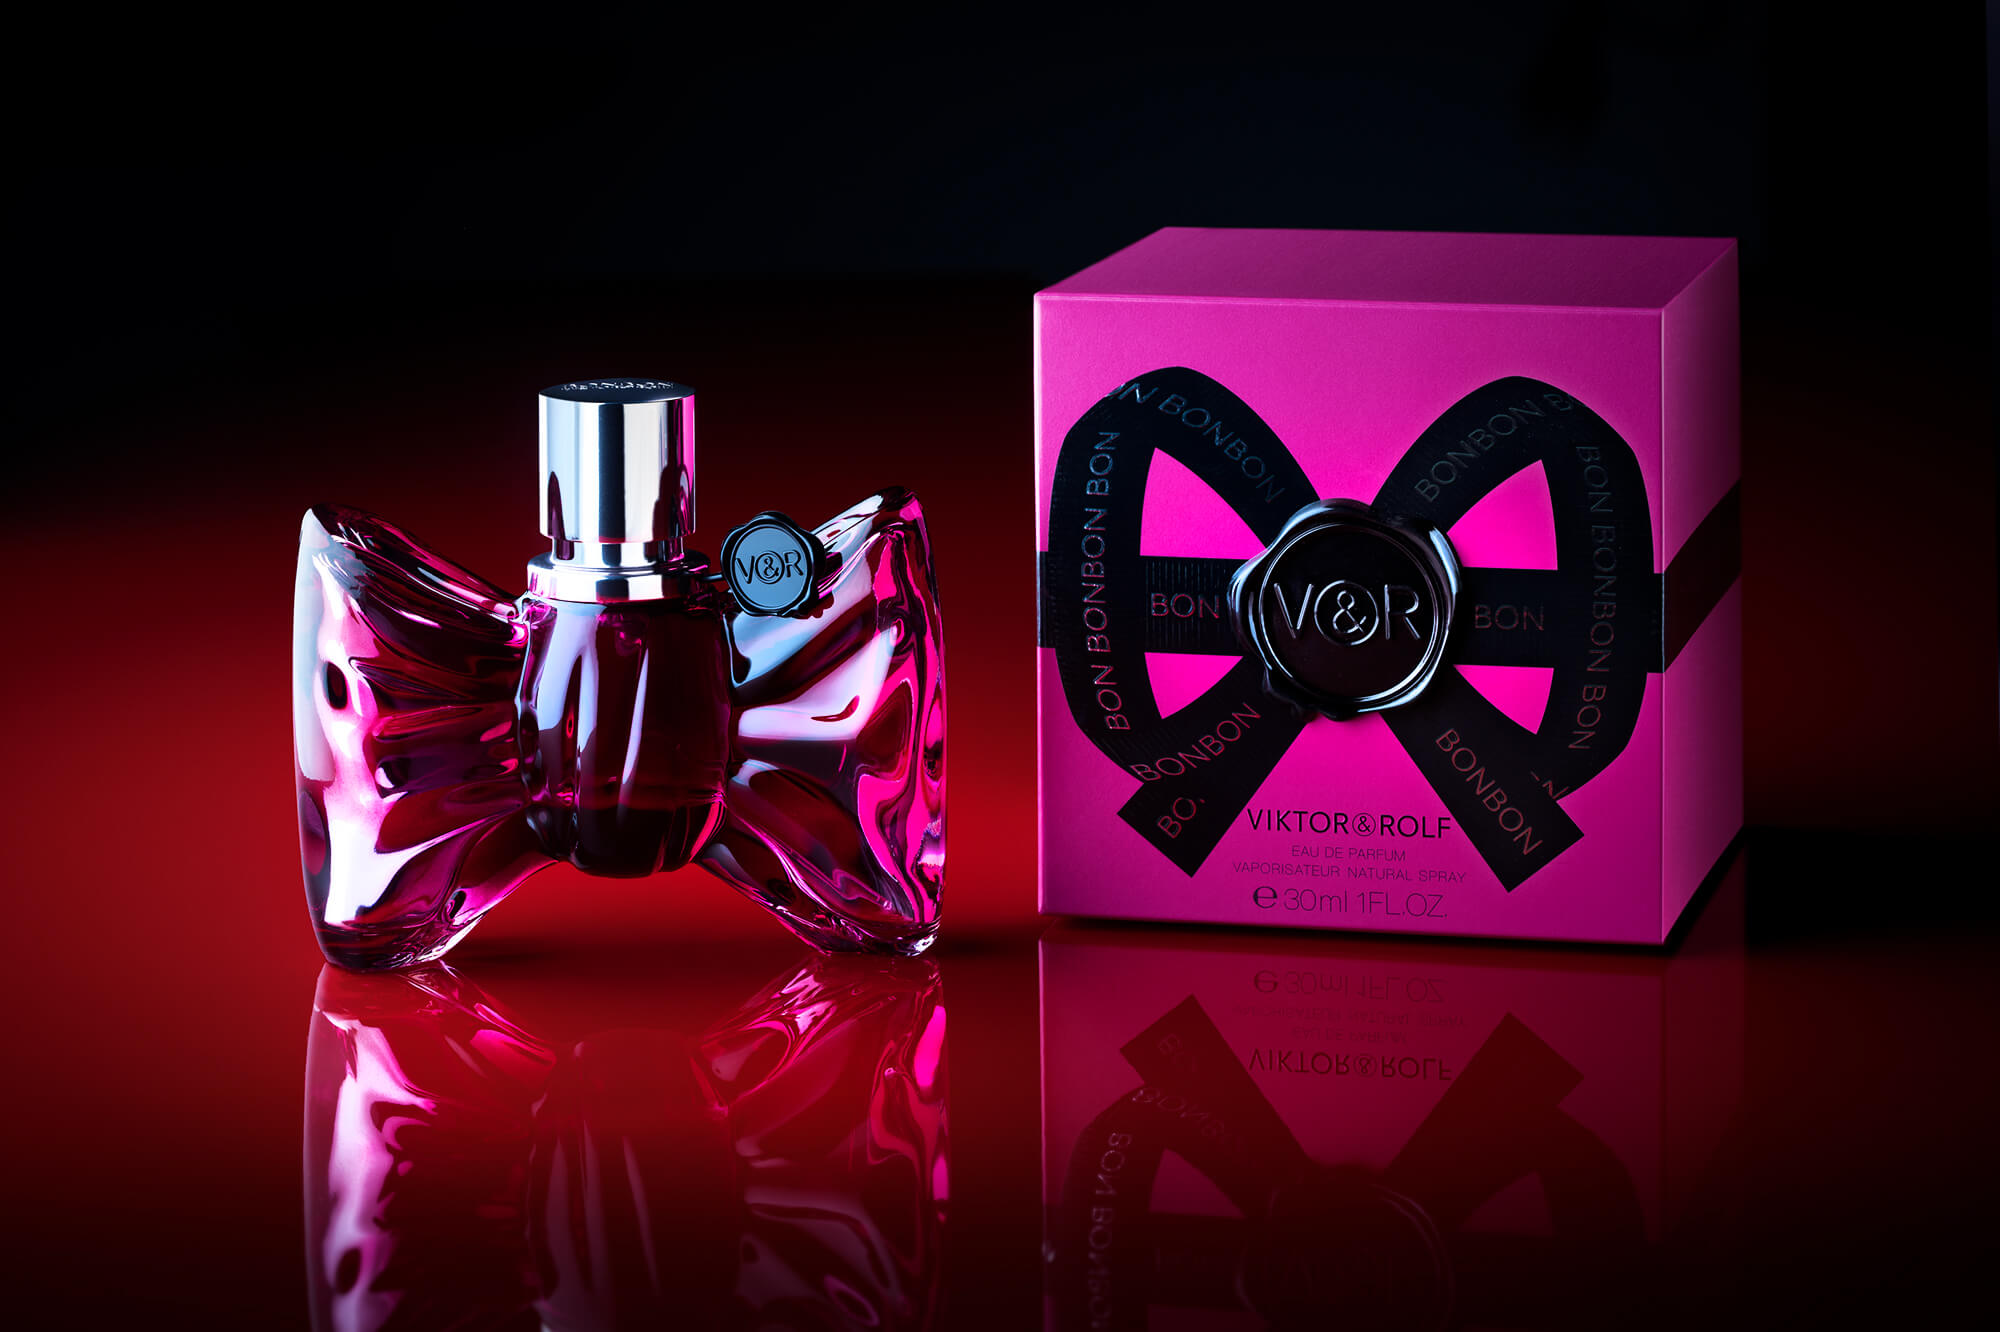 Packshot pour le parfum Bonbon de chez Viktor & Rolf, Antoine Duchene photographe publicitaire